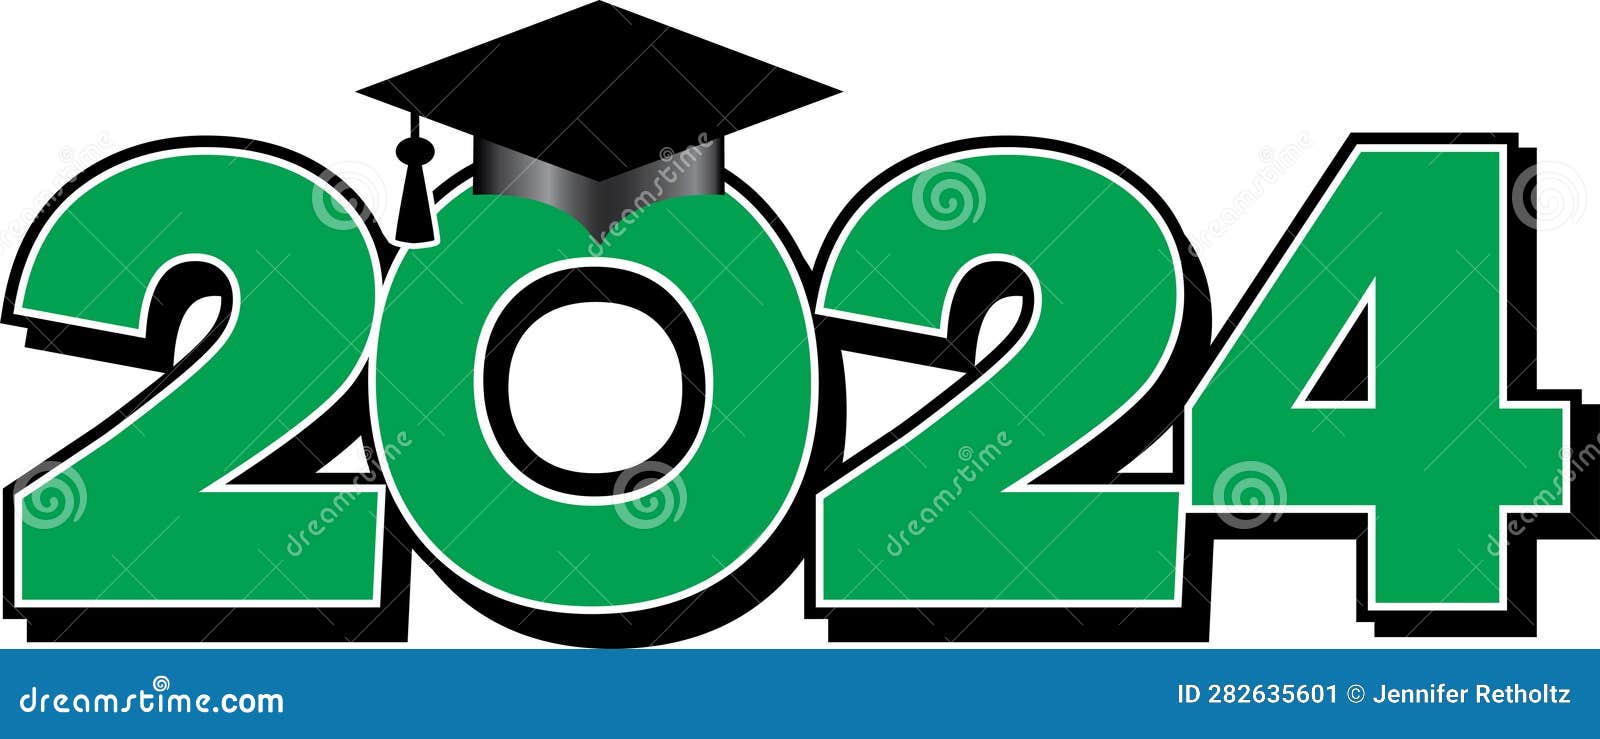 Grad green 2024 stock illustration. Illustration of completion 282635601